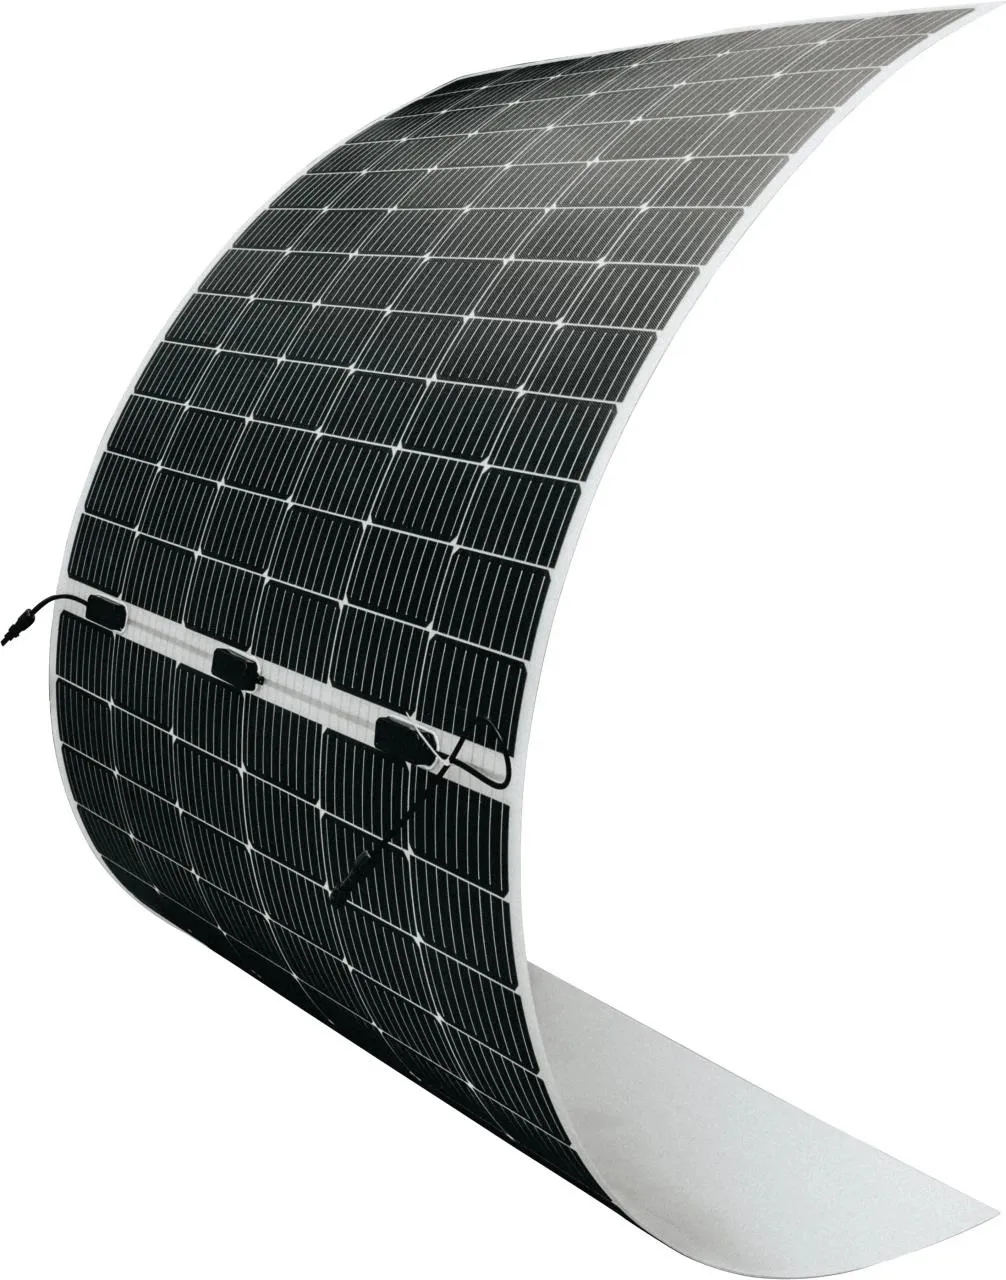 Çin tedarikçileri çin'den güneş panelleri fiyat 500w esnek güneş paneli en düşük fiyat güneş panelleri